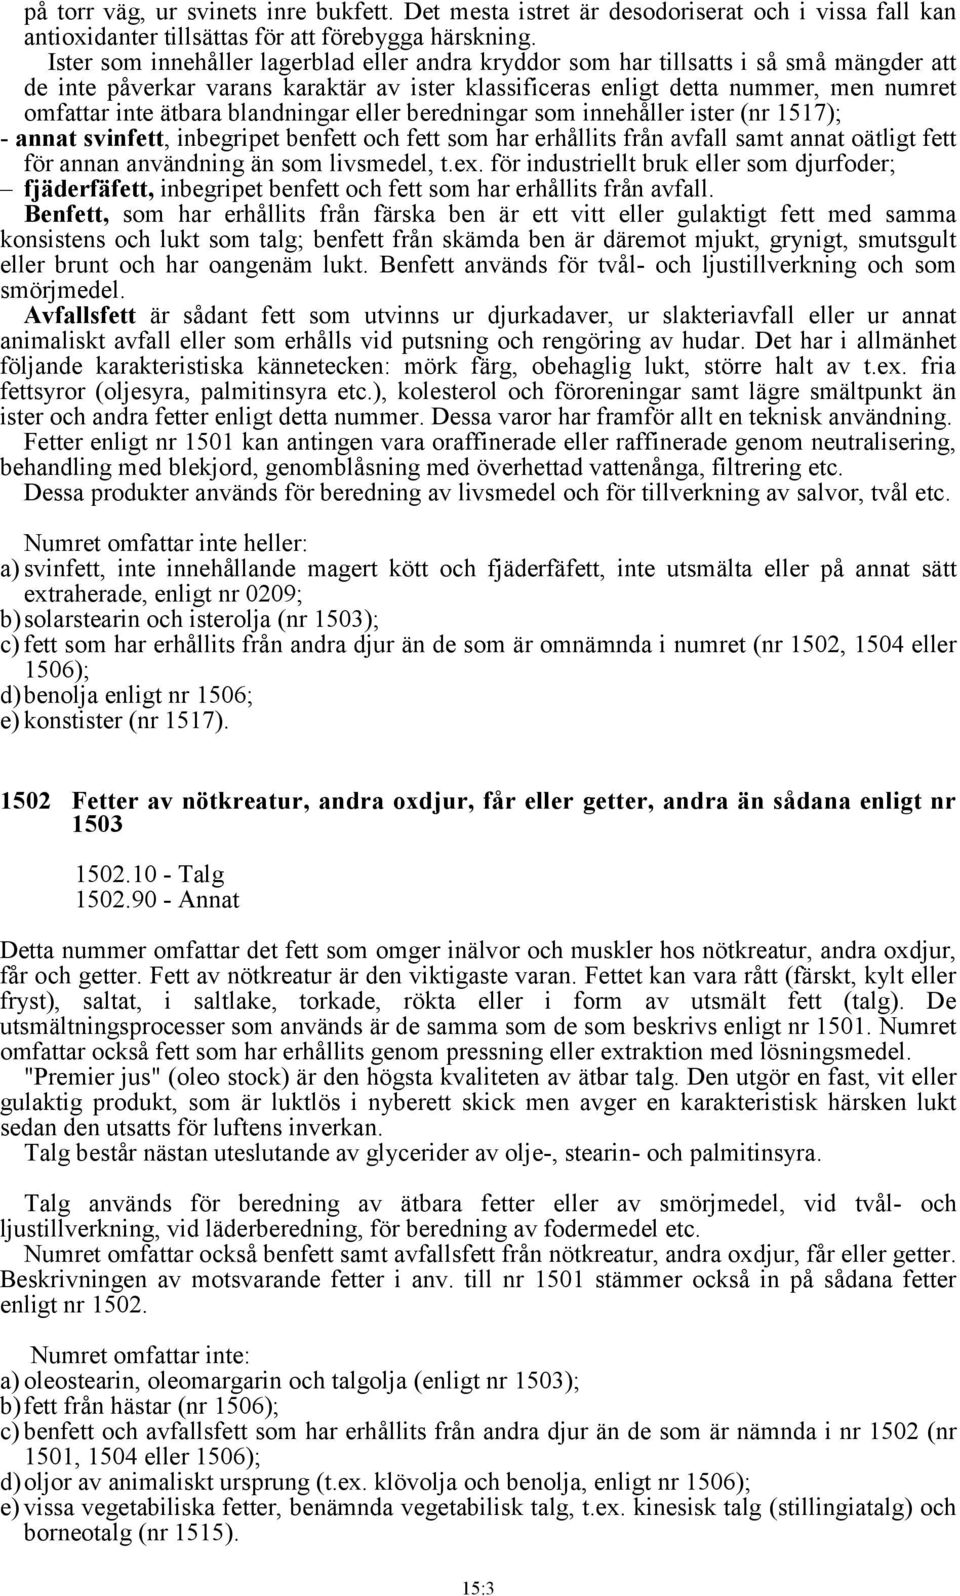 blandningar eller beredningar som innehåller ister (nr 1517); - annat svinfett, inbegripet benfett och fett som har erhållits från avfall samt annat oätligt fett för annan användning än som